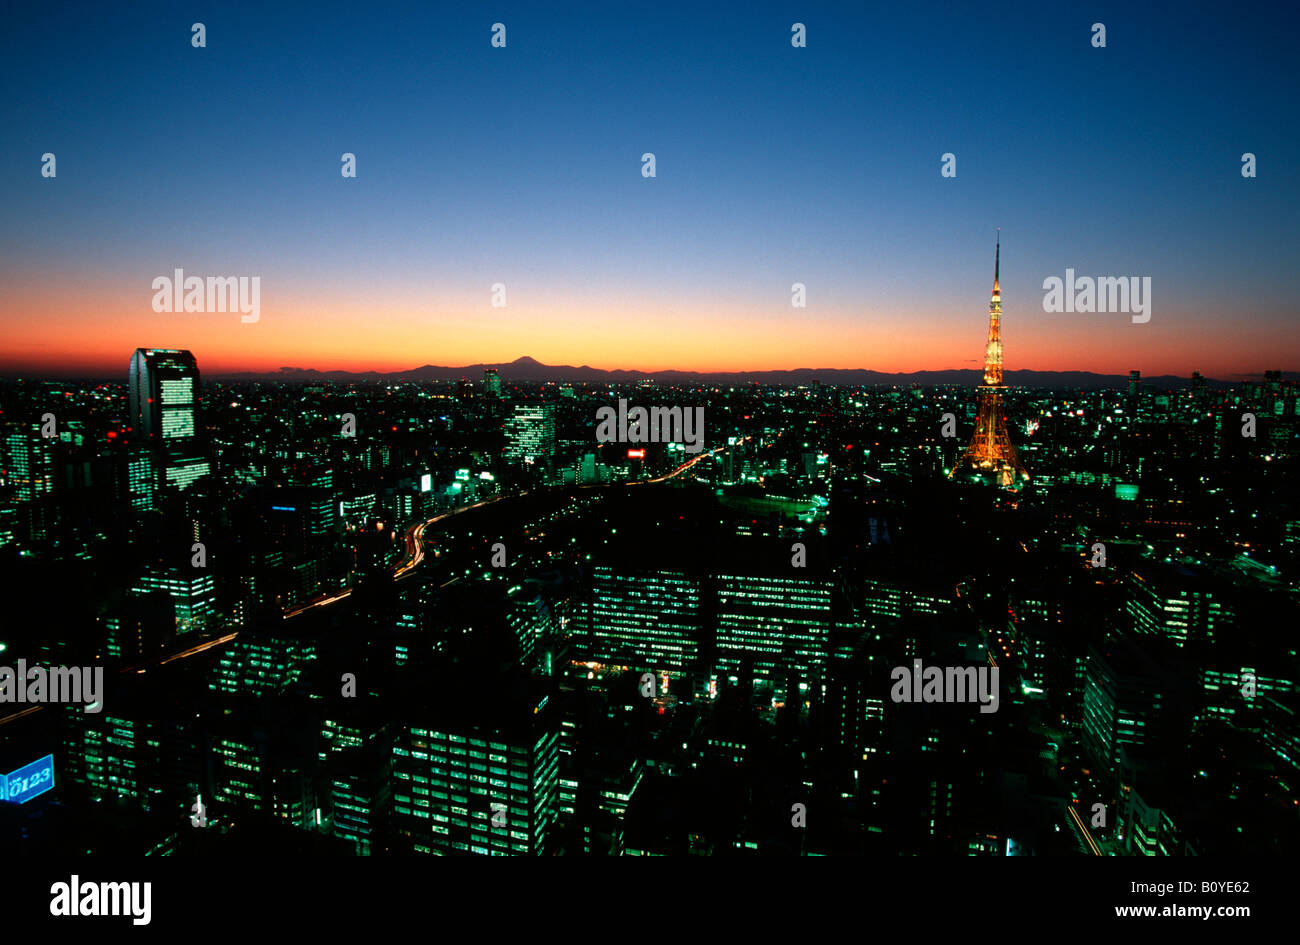 skyline of Tokio with Tokyo Tower, Shinjuku Area, Japan, Tokio Stock Photo